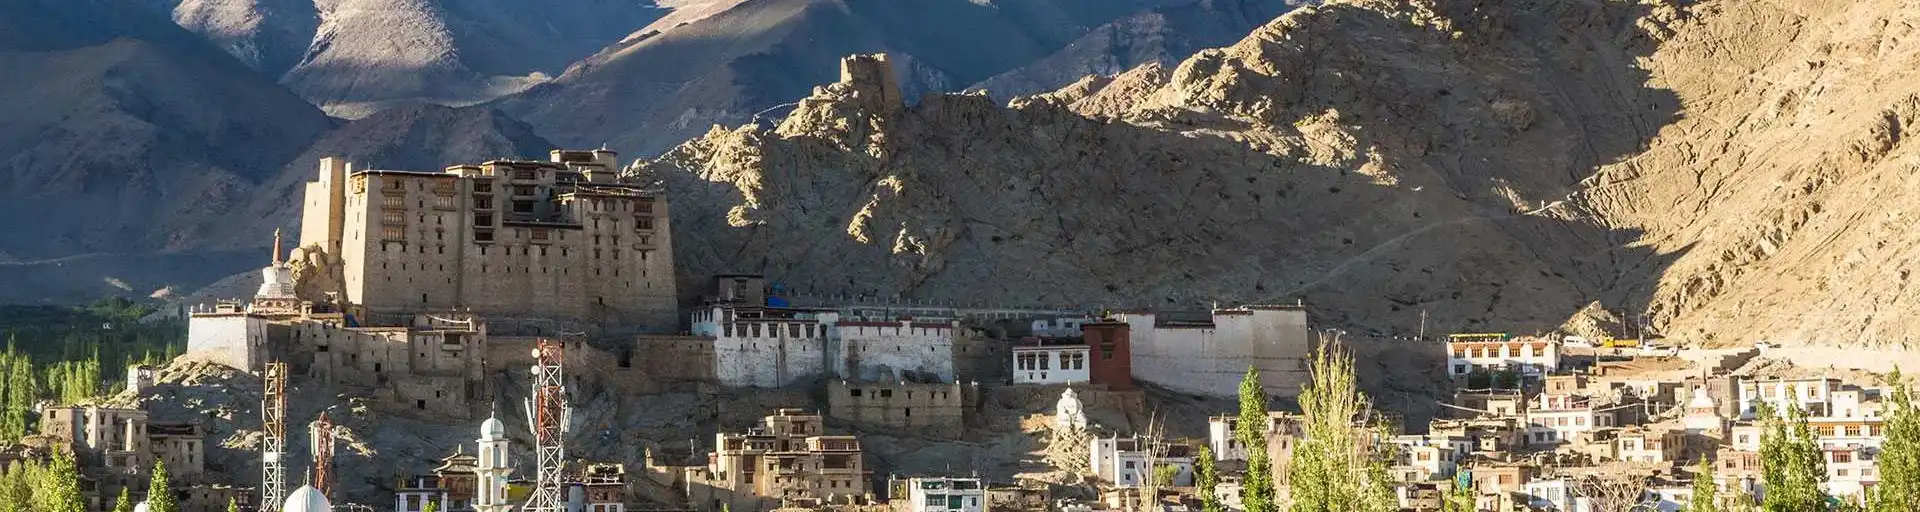 Leh_Ladakh_Header_Image